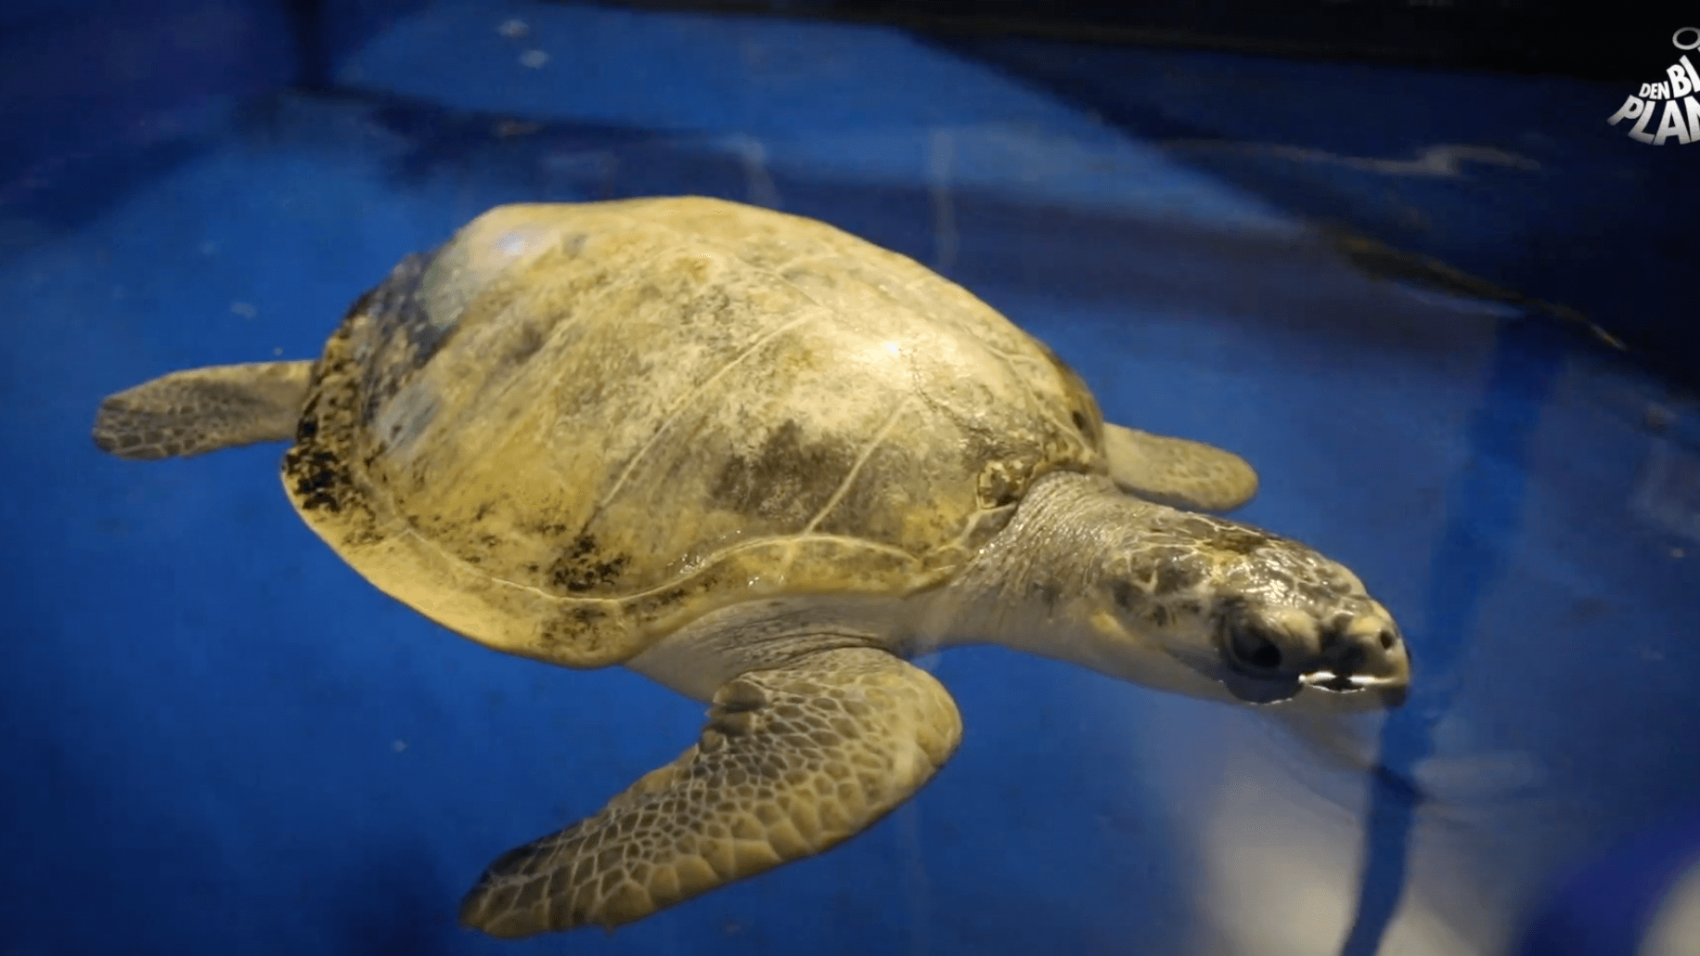 Den Blå Planet har modtaget to meget syge havskildpadder